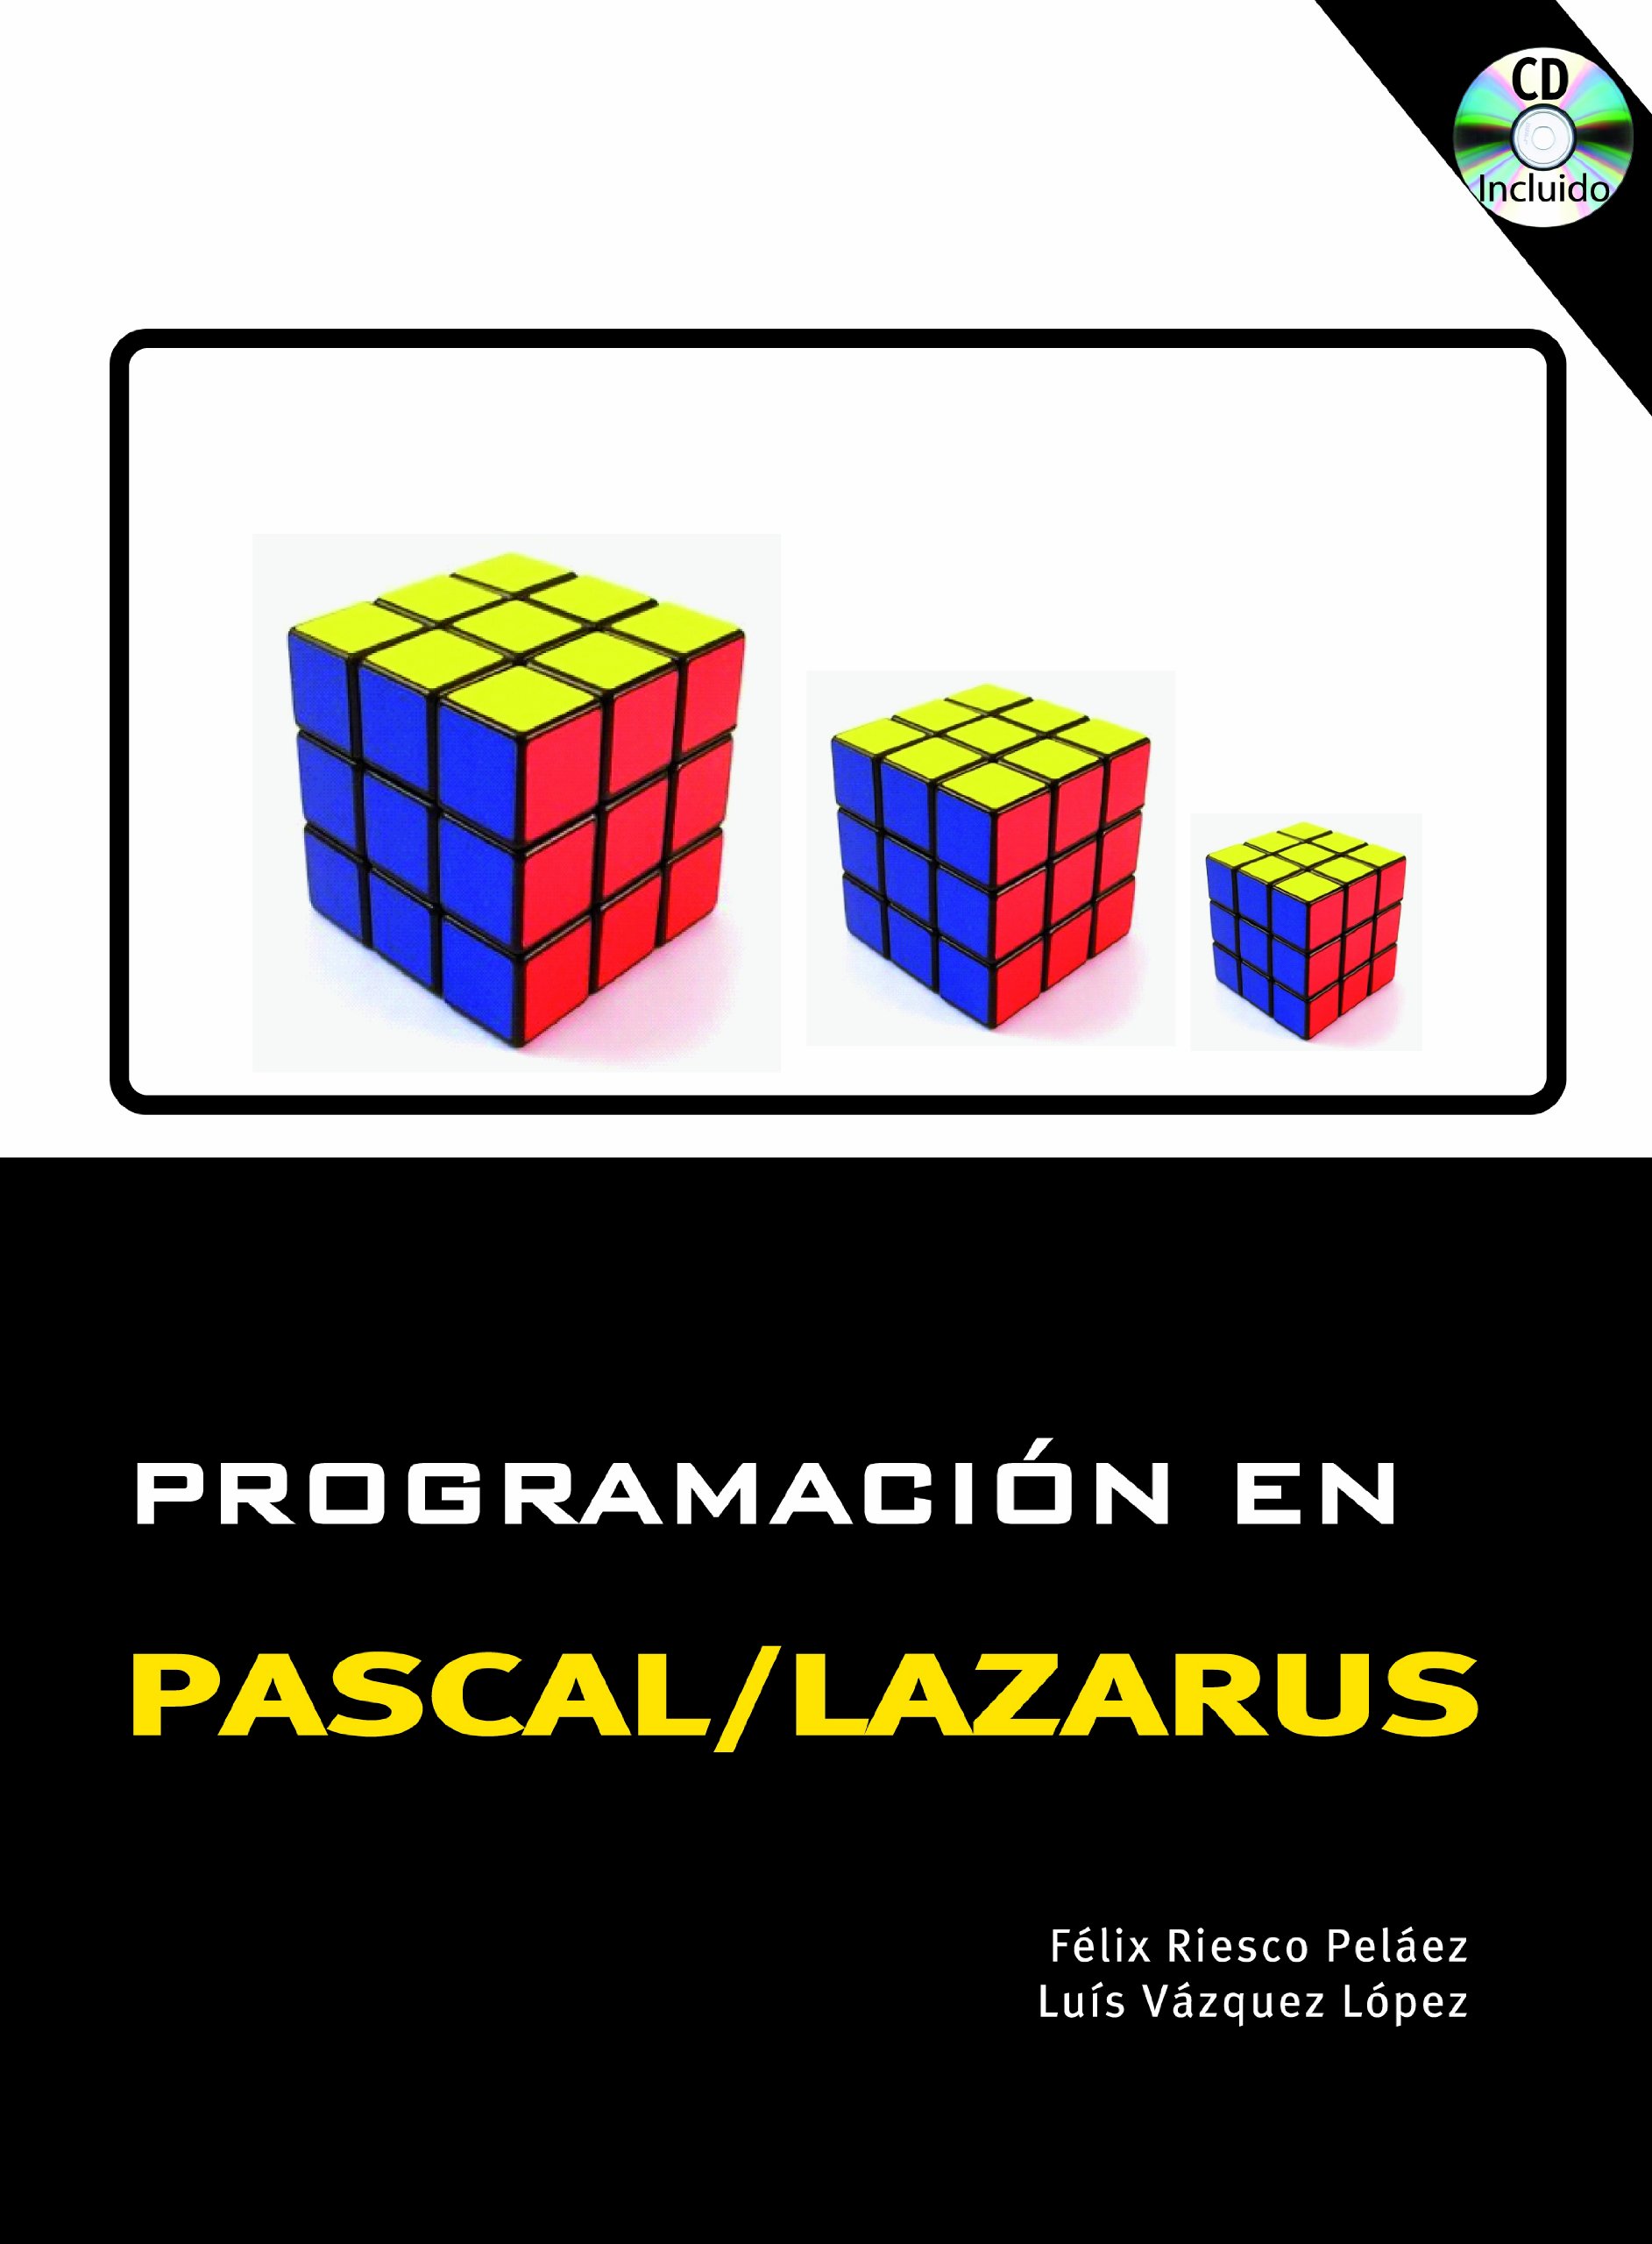 Imagen de portada del libro Programación en Pascal/Lazarus